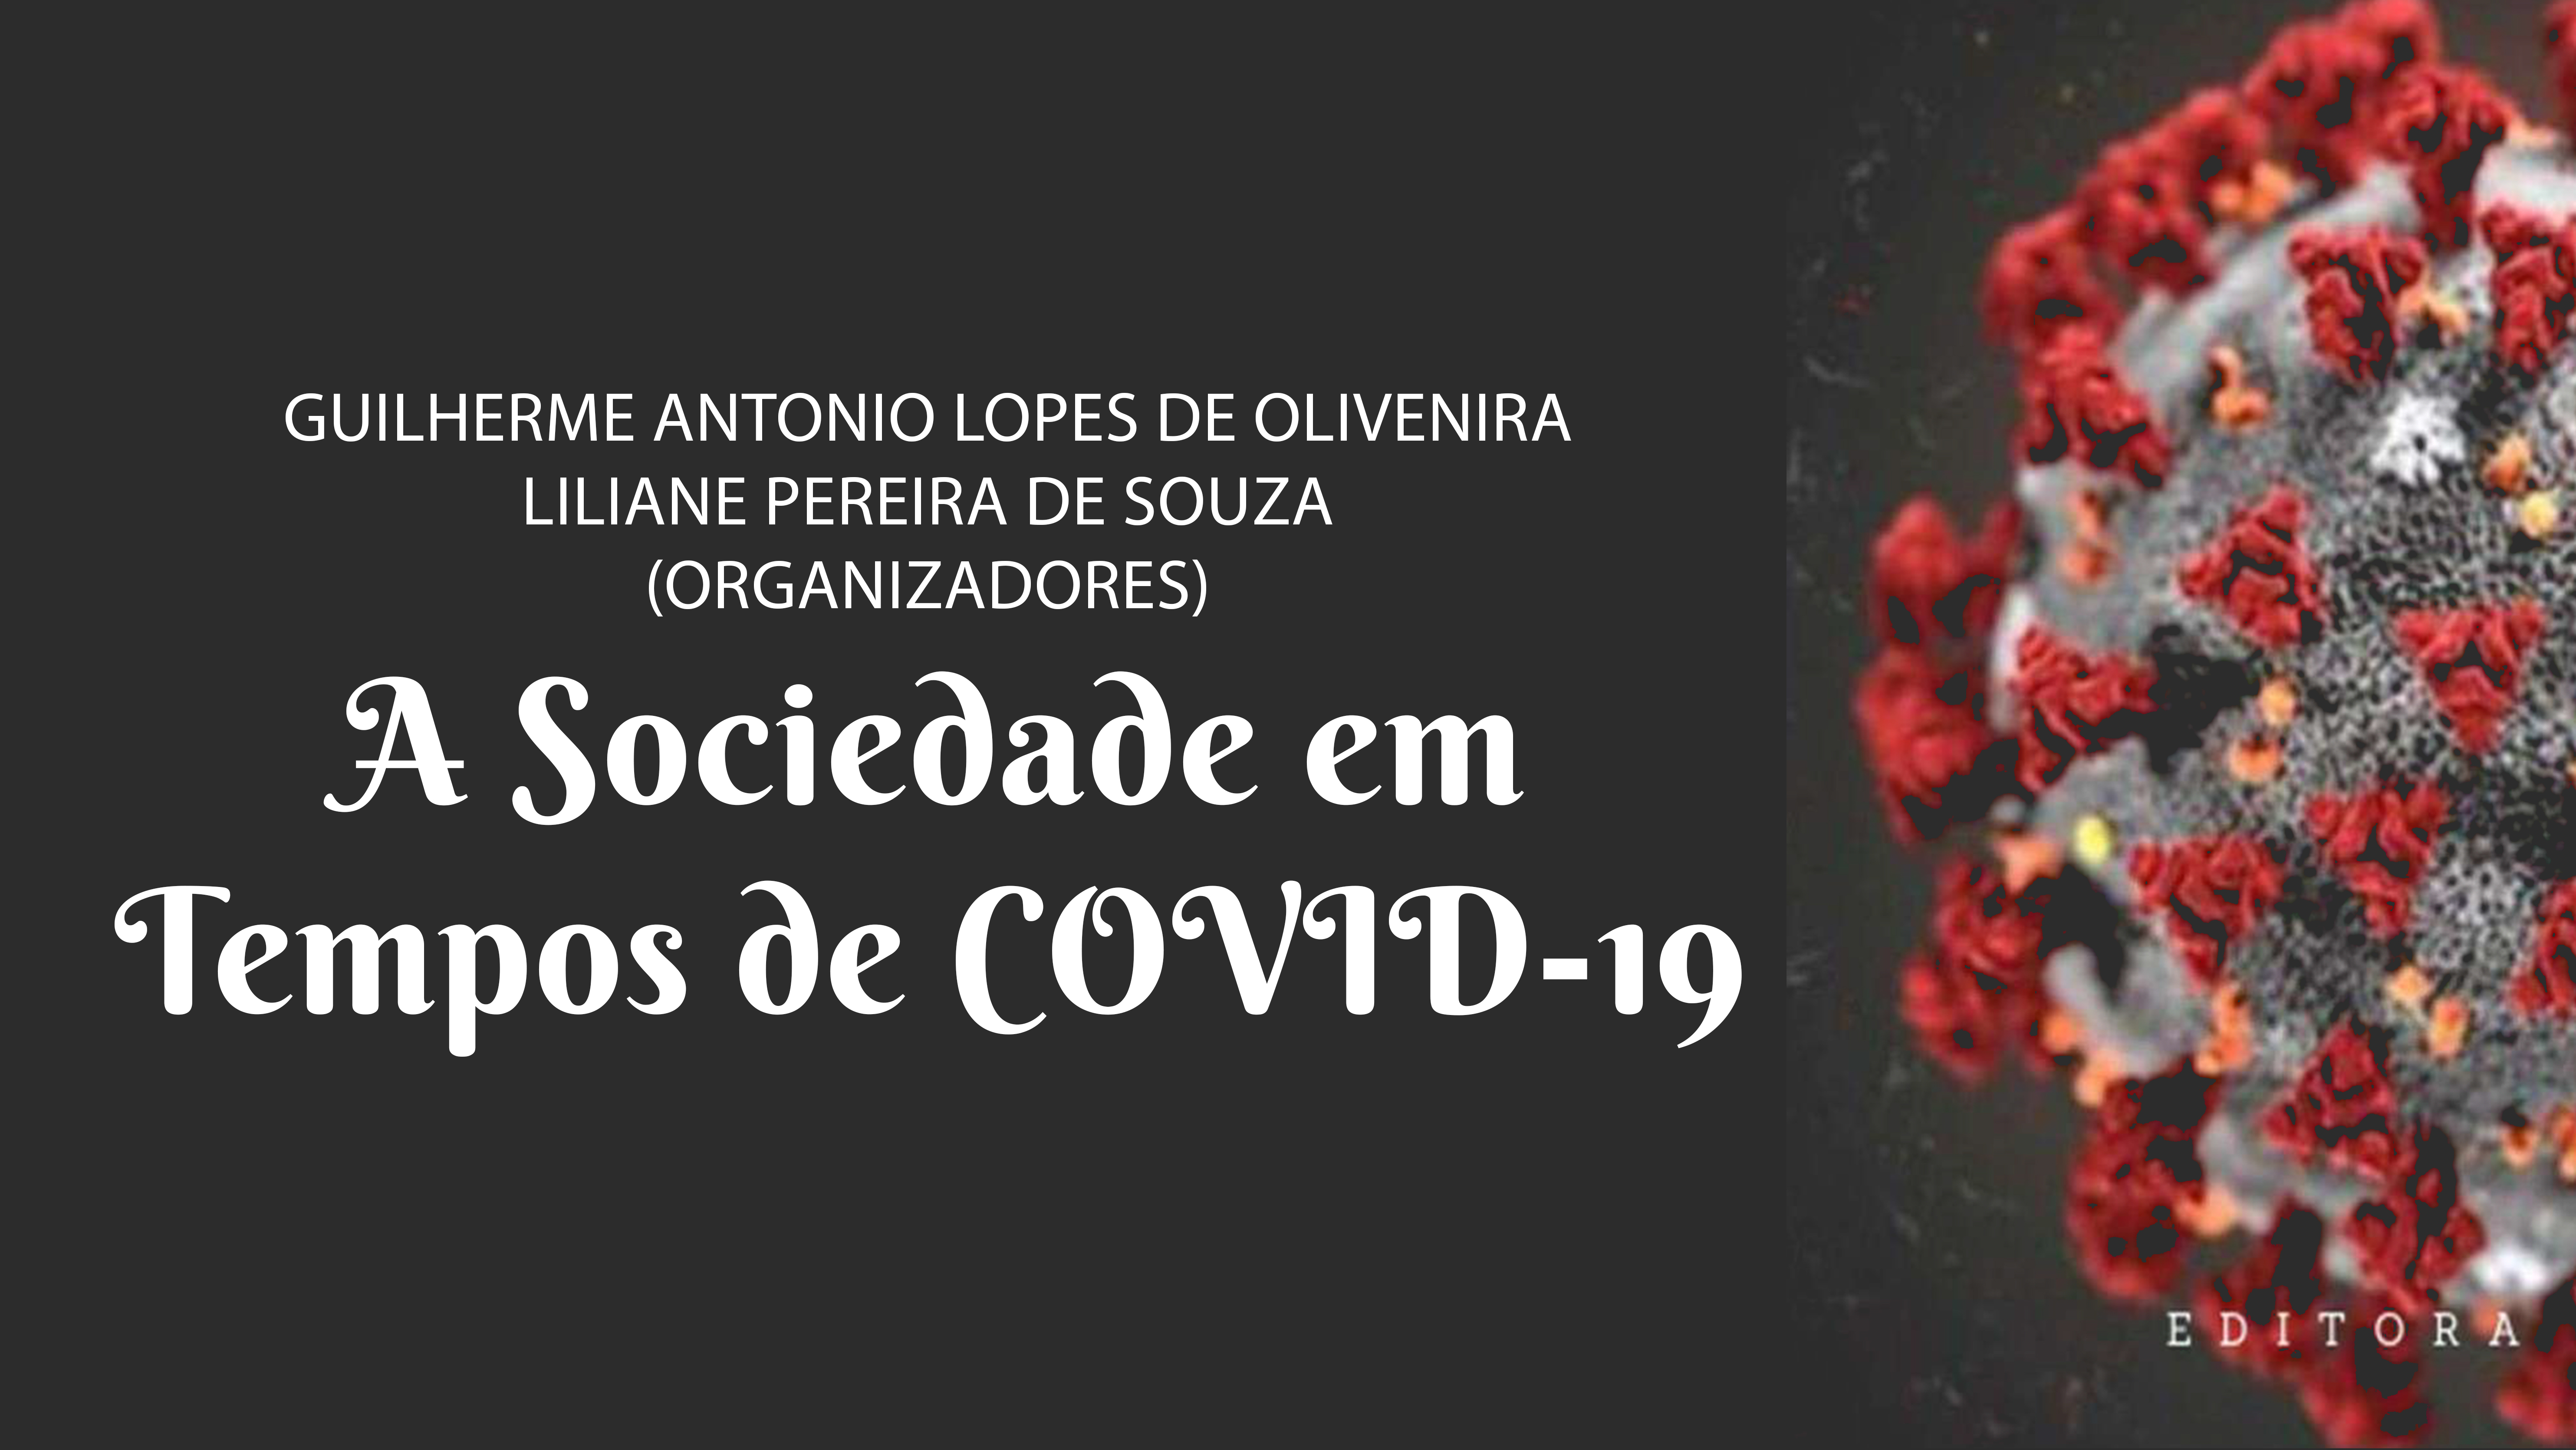 A SOCIEDADE EM TEMPOS DE COVID-19